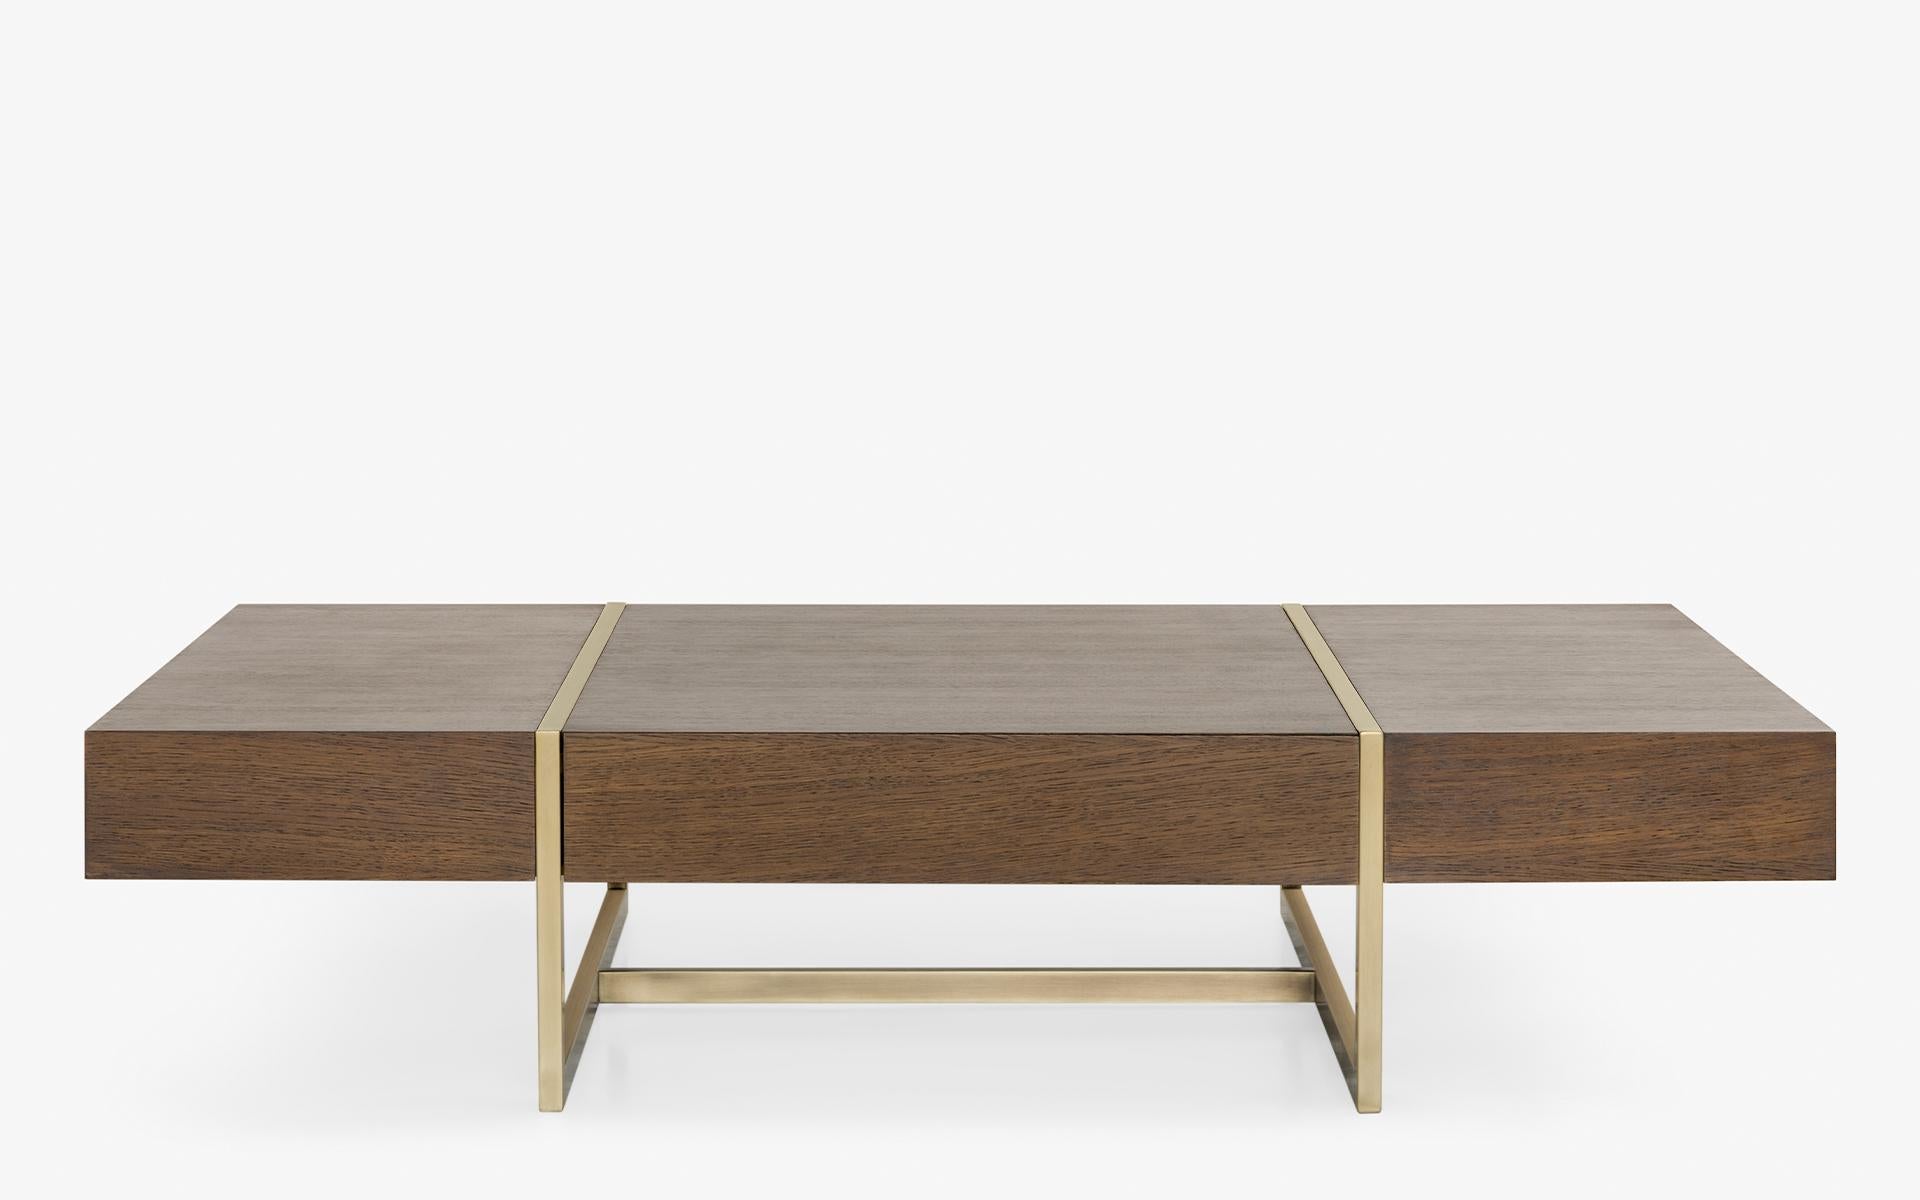 Voici l'exquise table basse Famed, un complément enchanteur à tout espace de vie qui allie sans effort sophistication et praticité. Fabriquée avec une attention méticuleuse aux détails, cette table basse se dresse sur d'élégants pieds en laiton,